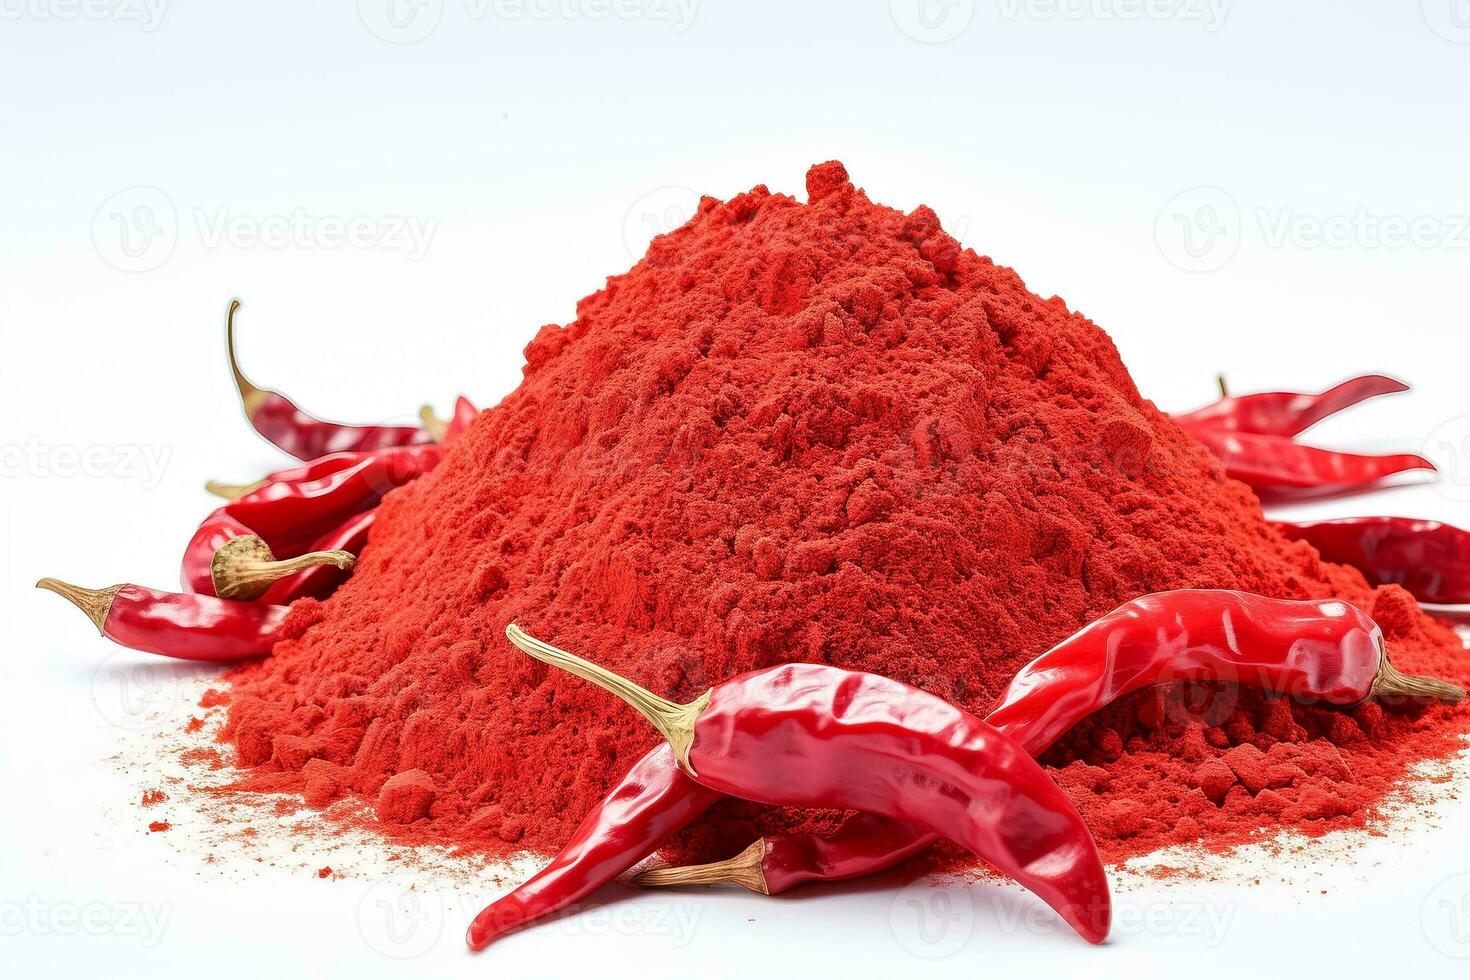 jord röd chili peppar på en vit bakgrund komprimerad beskrivning foto